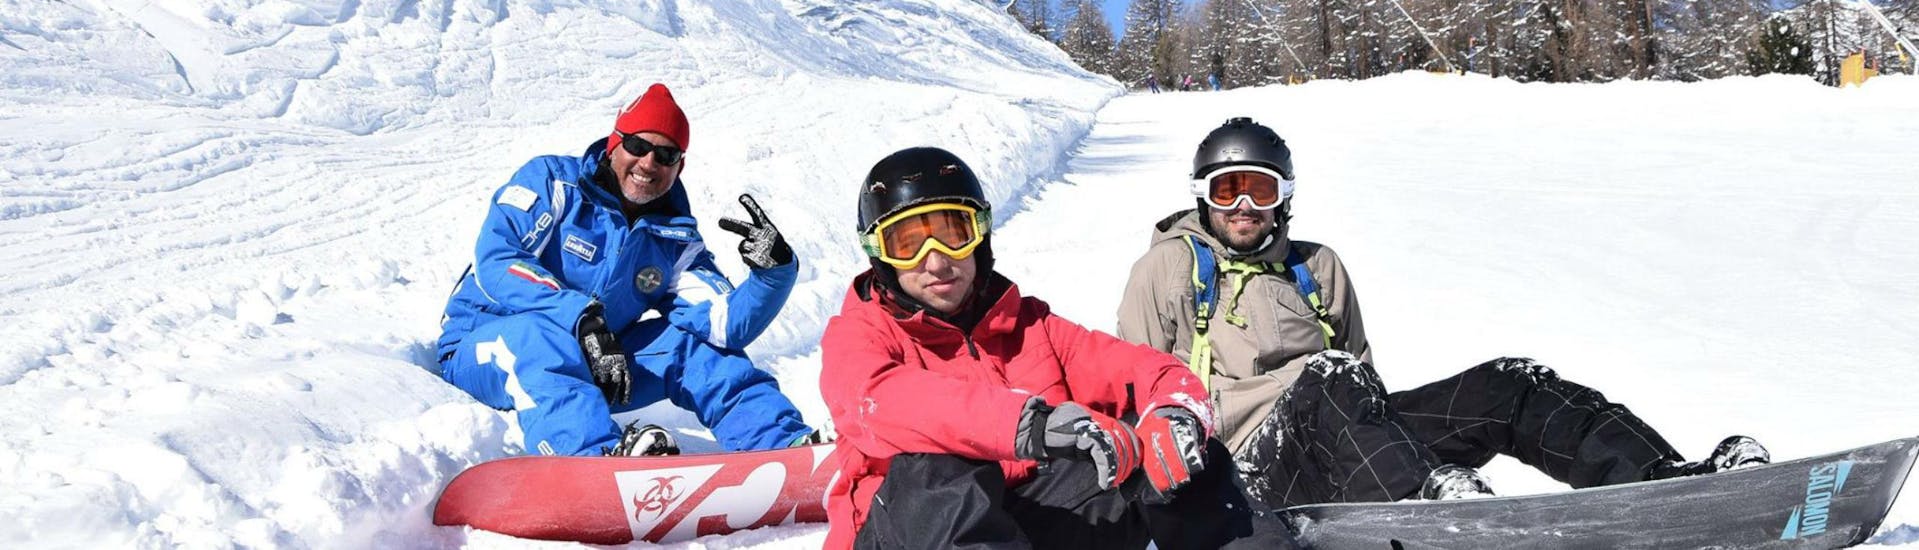 Due snowboarder e il loro istruttore si prendono una breve pausa dalle lezioni di snowboard per bambini e adulti - Bassa Stagione organizzate dalla Scuola di Sci e Snowboard Livigno Italia.